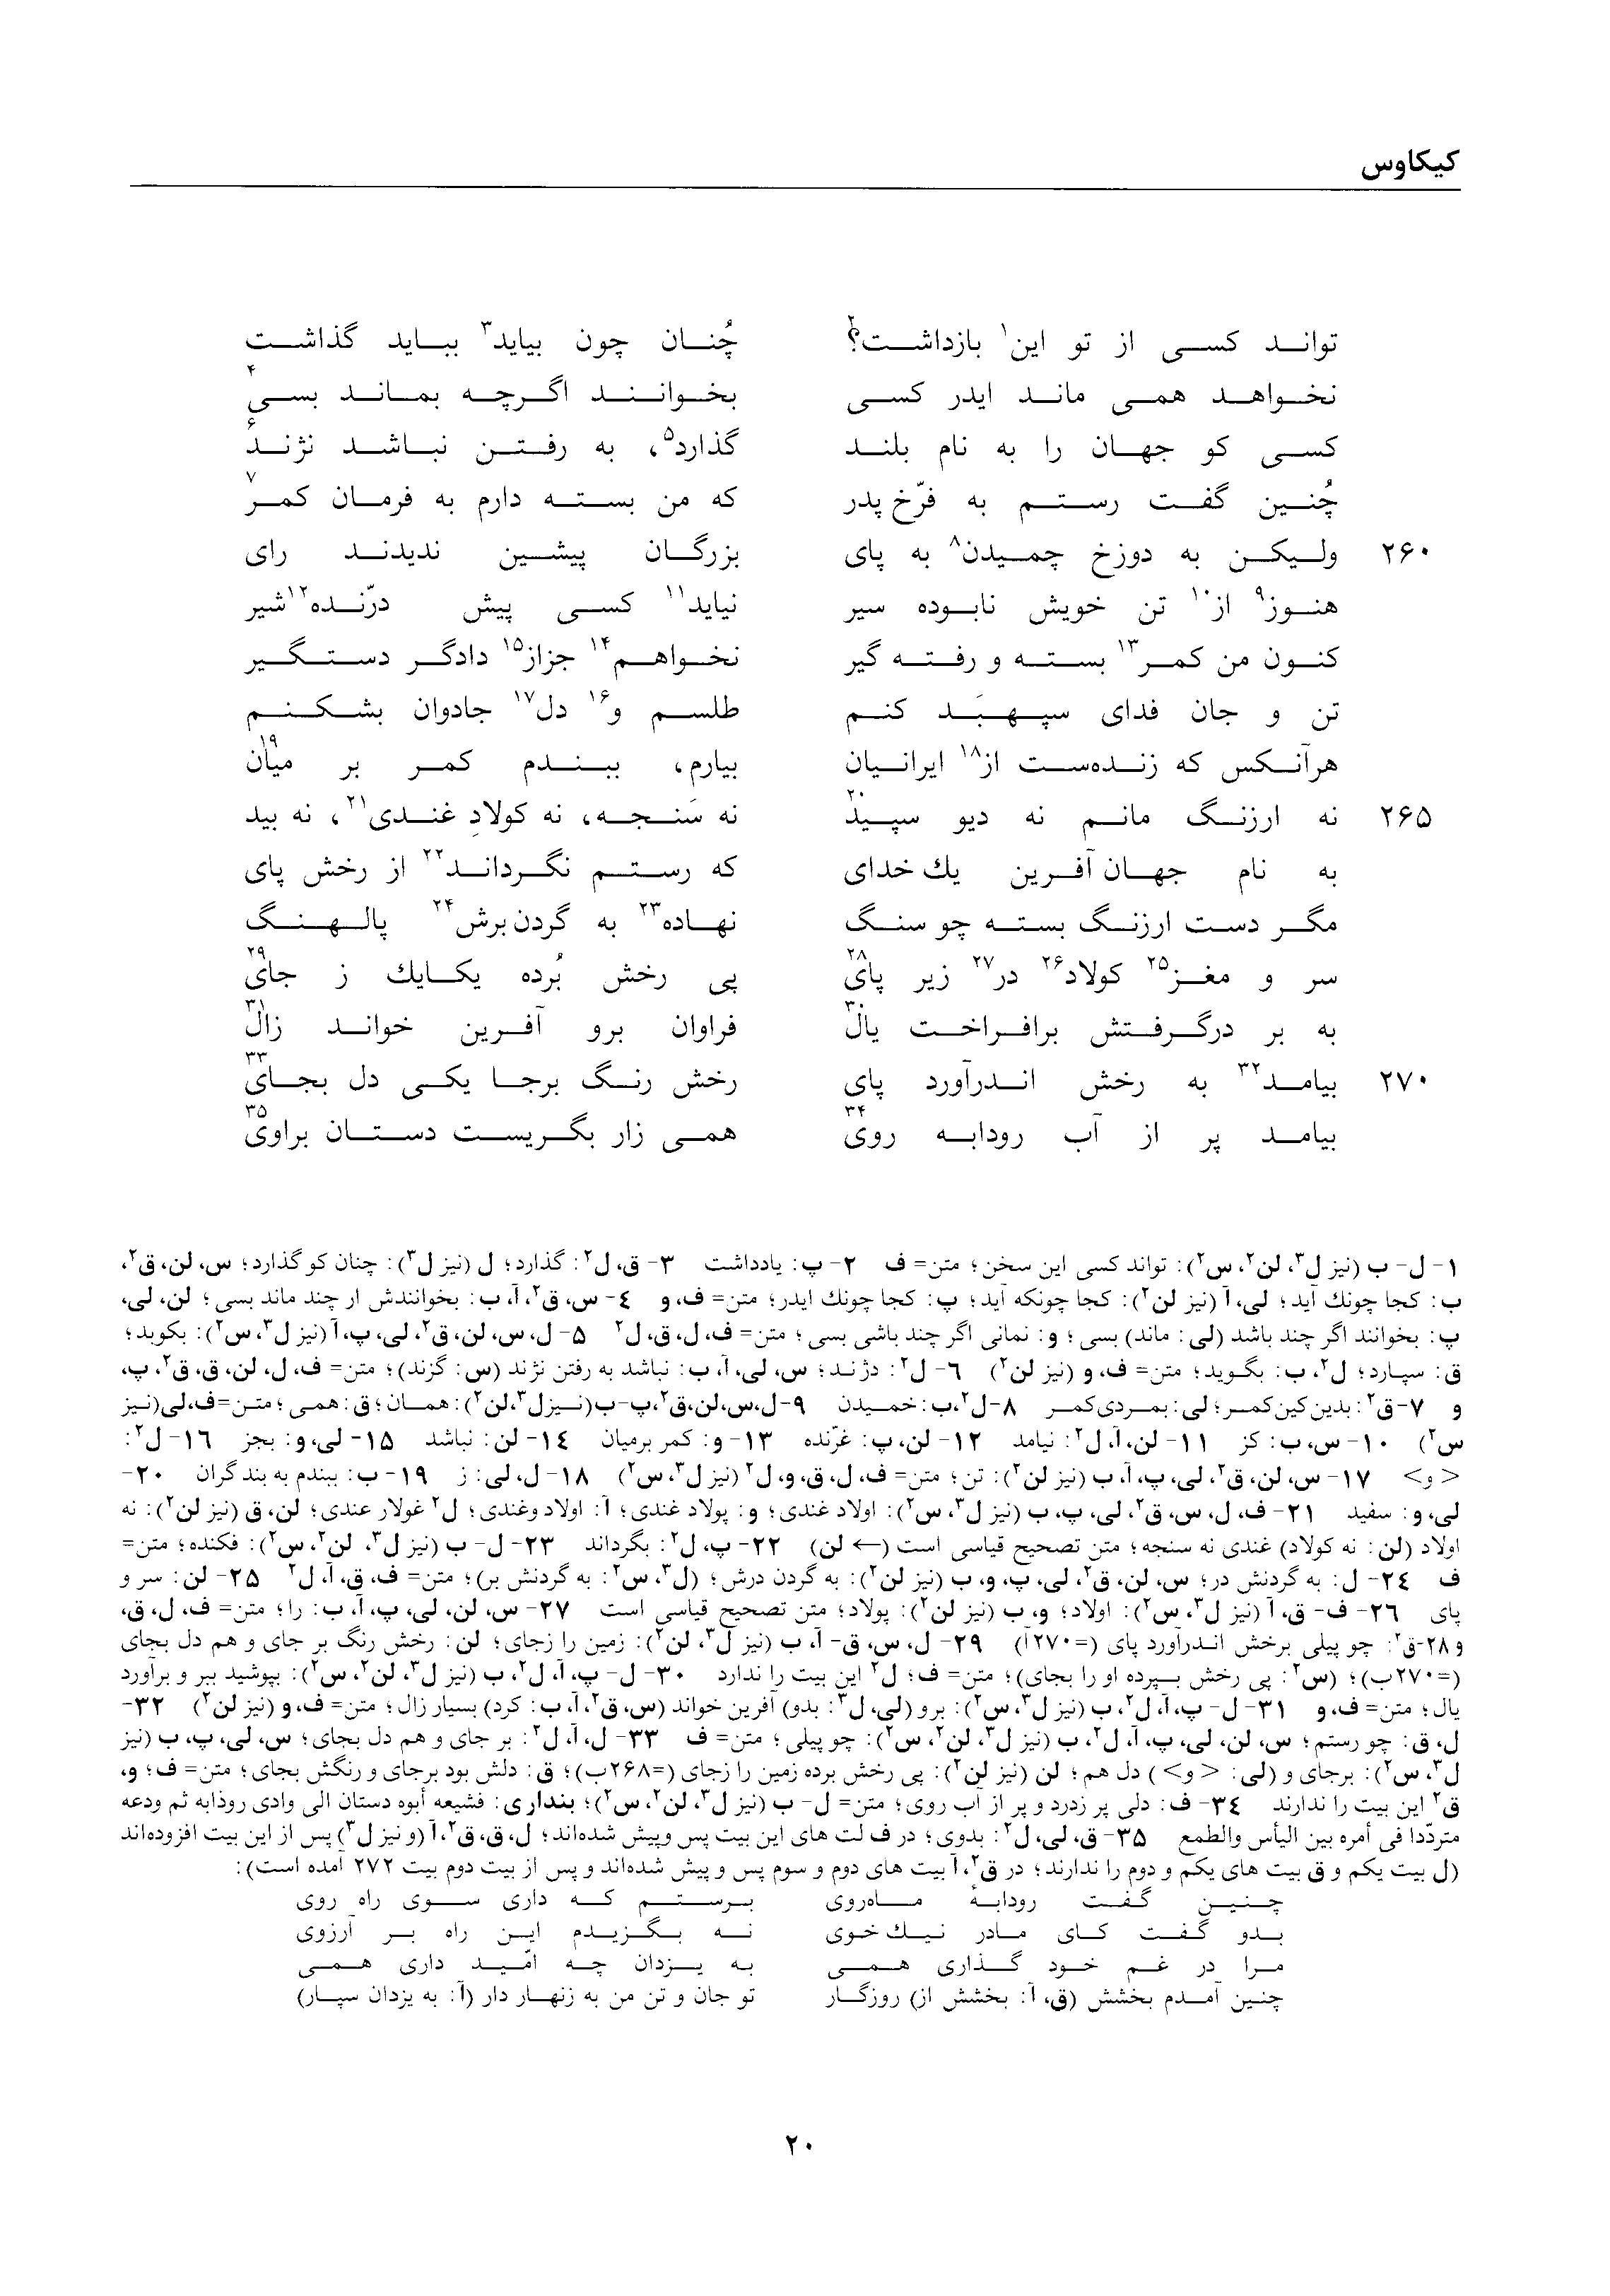 vol. 2, p. 20